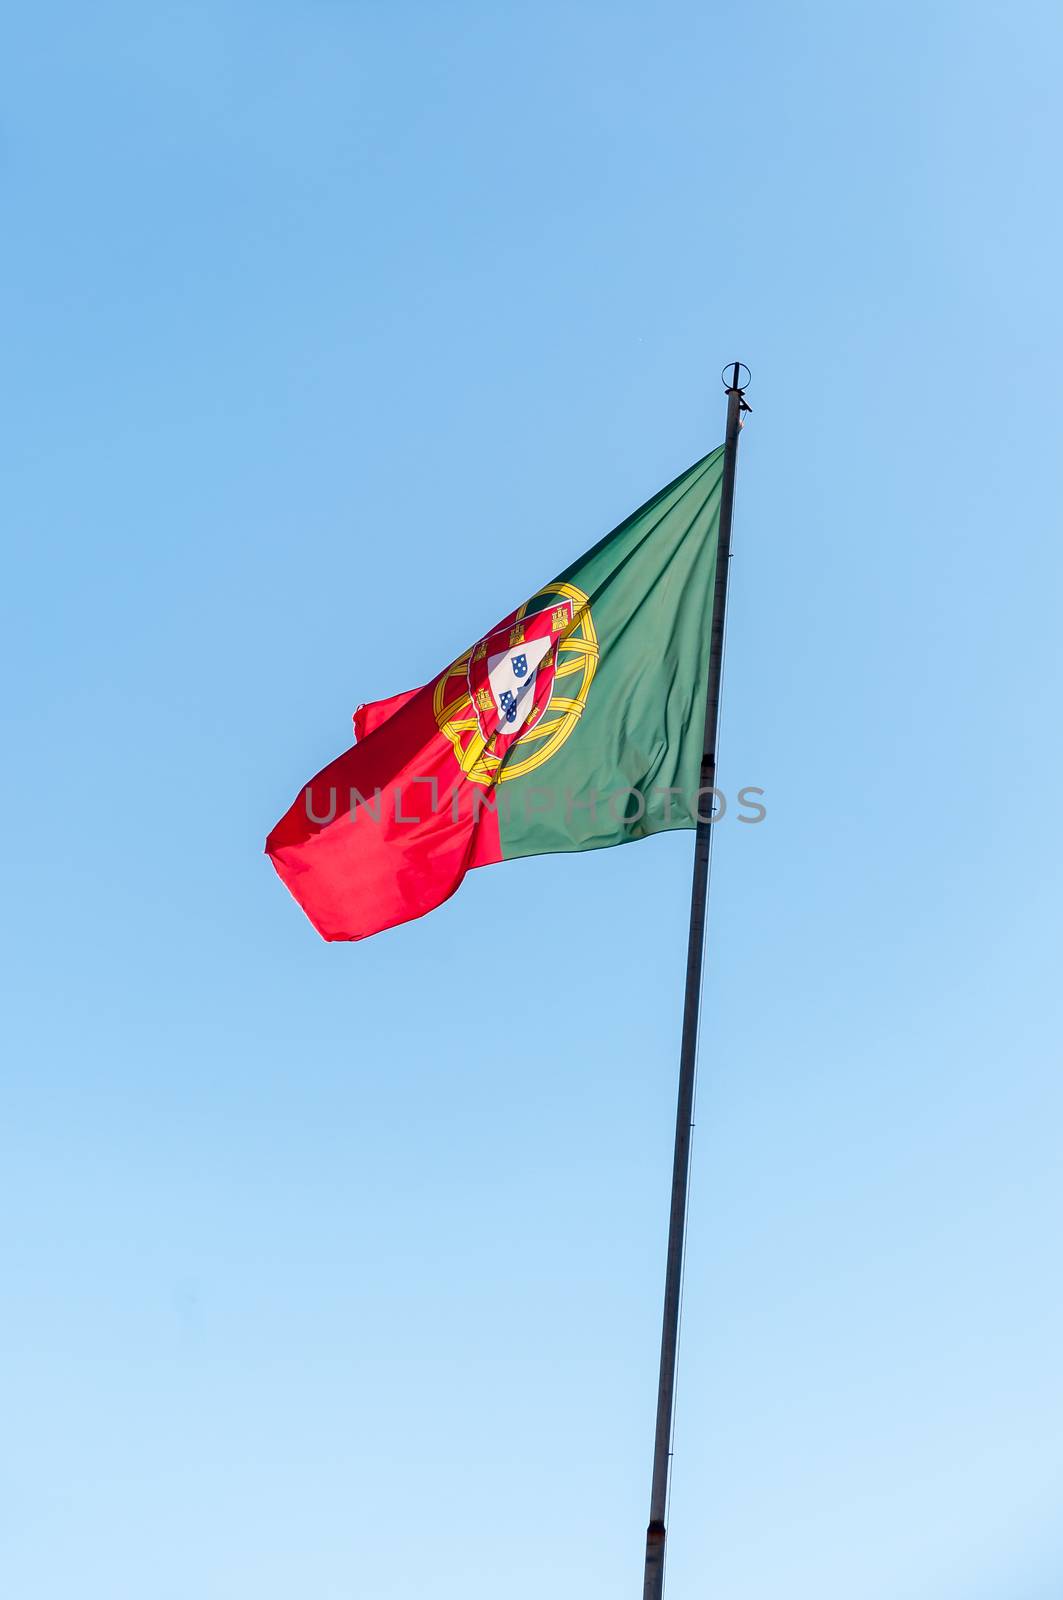 Portuguese flag on a pole against beautiful sky